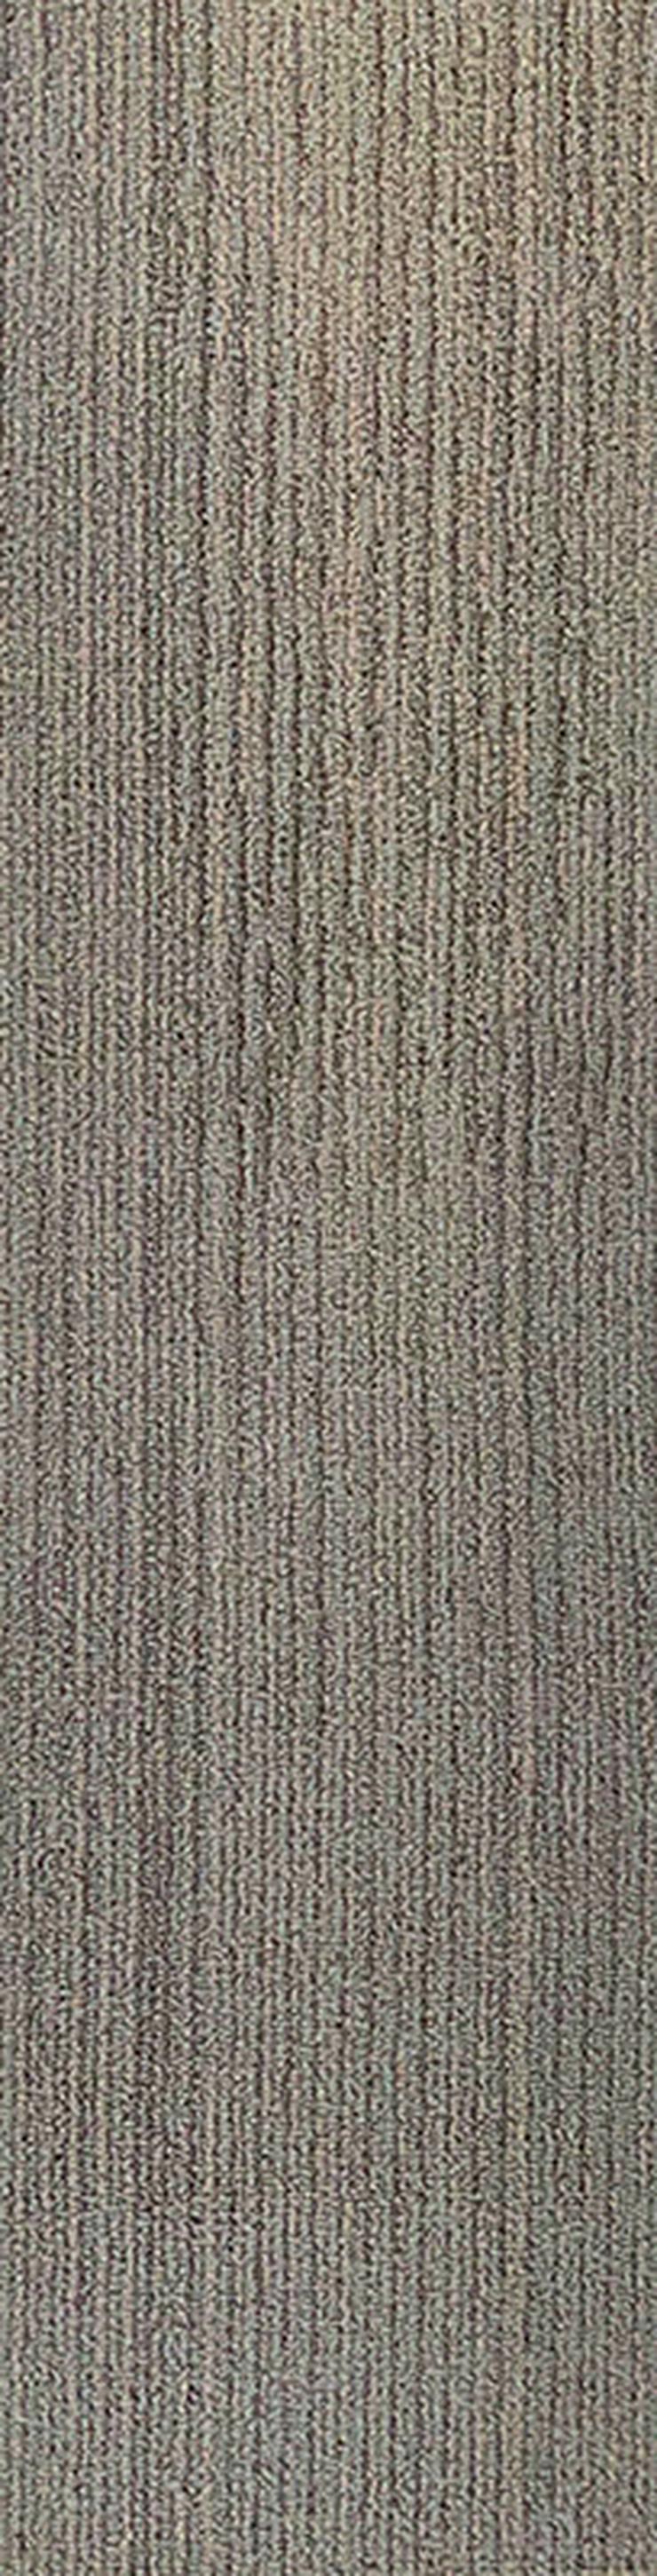 Bild 10: Schöne 'Laminat' Teppichfliesen 25x100cm Sehr Decorativ